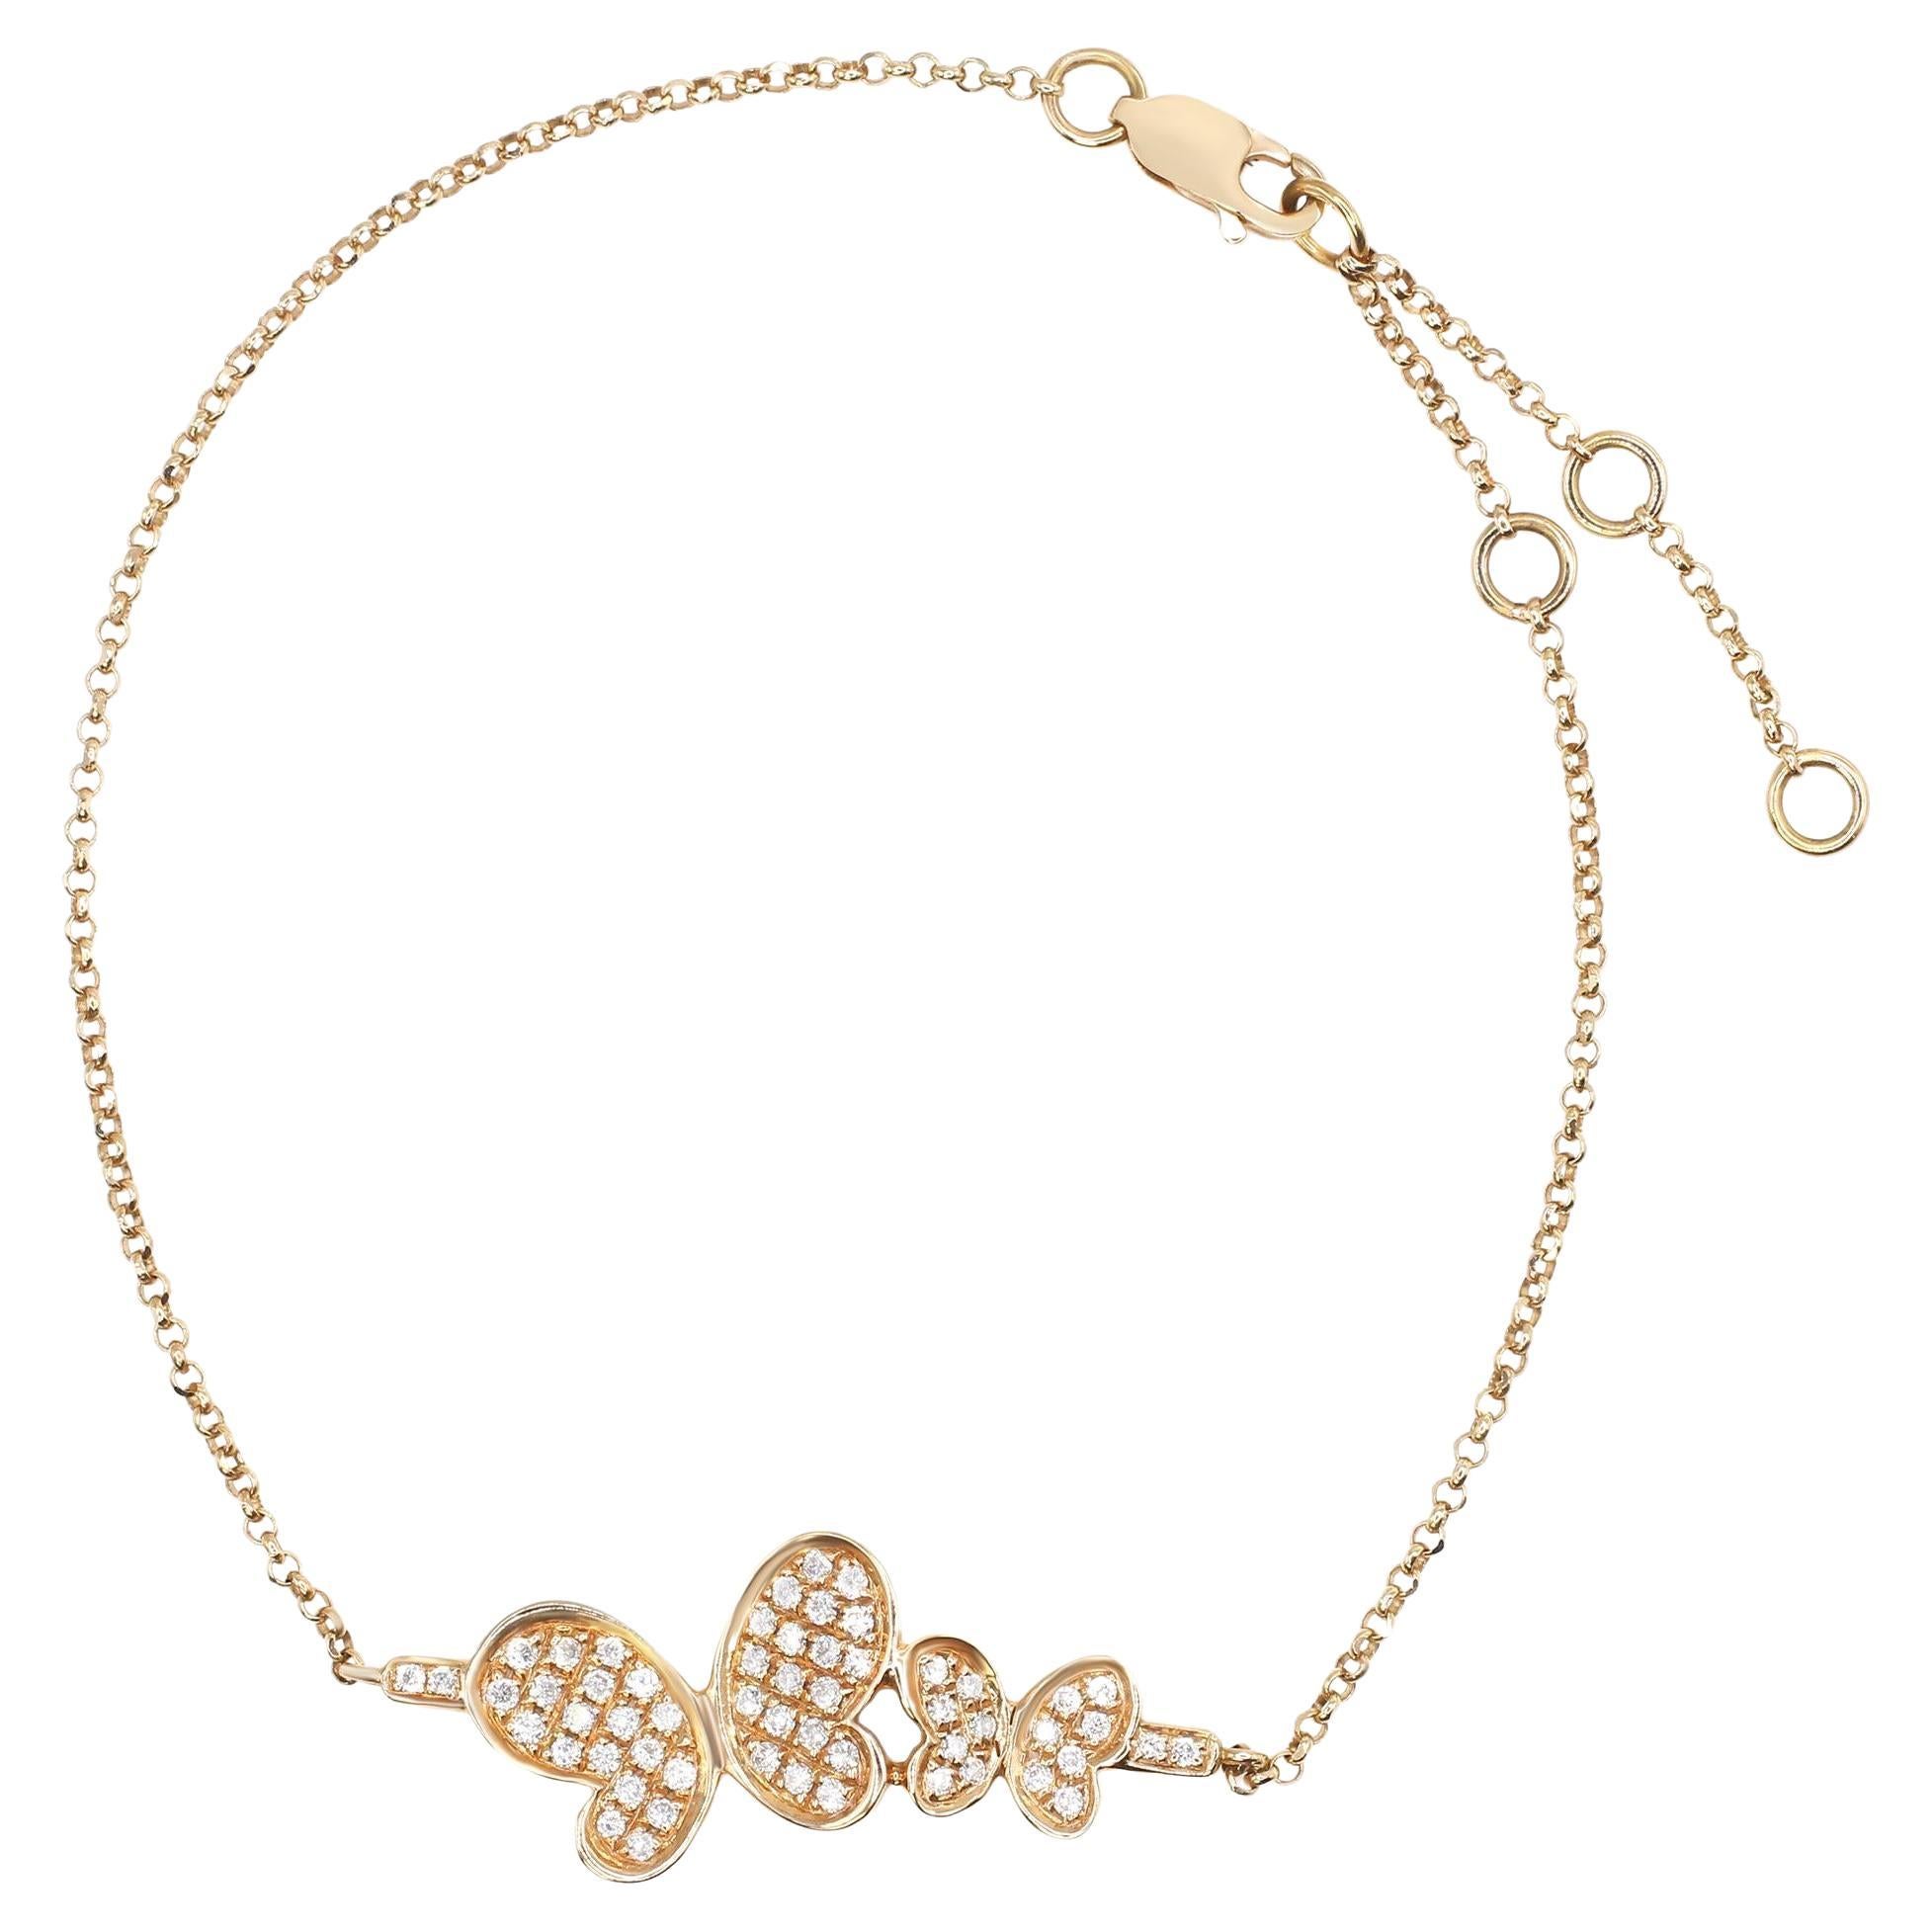 Rachel Koen Simple Diamond Butterfly Chain Bracelet 18k Rose Gold 0.36cttw For Sale